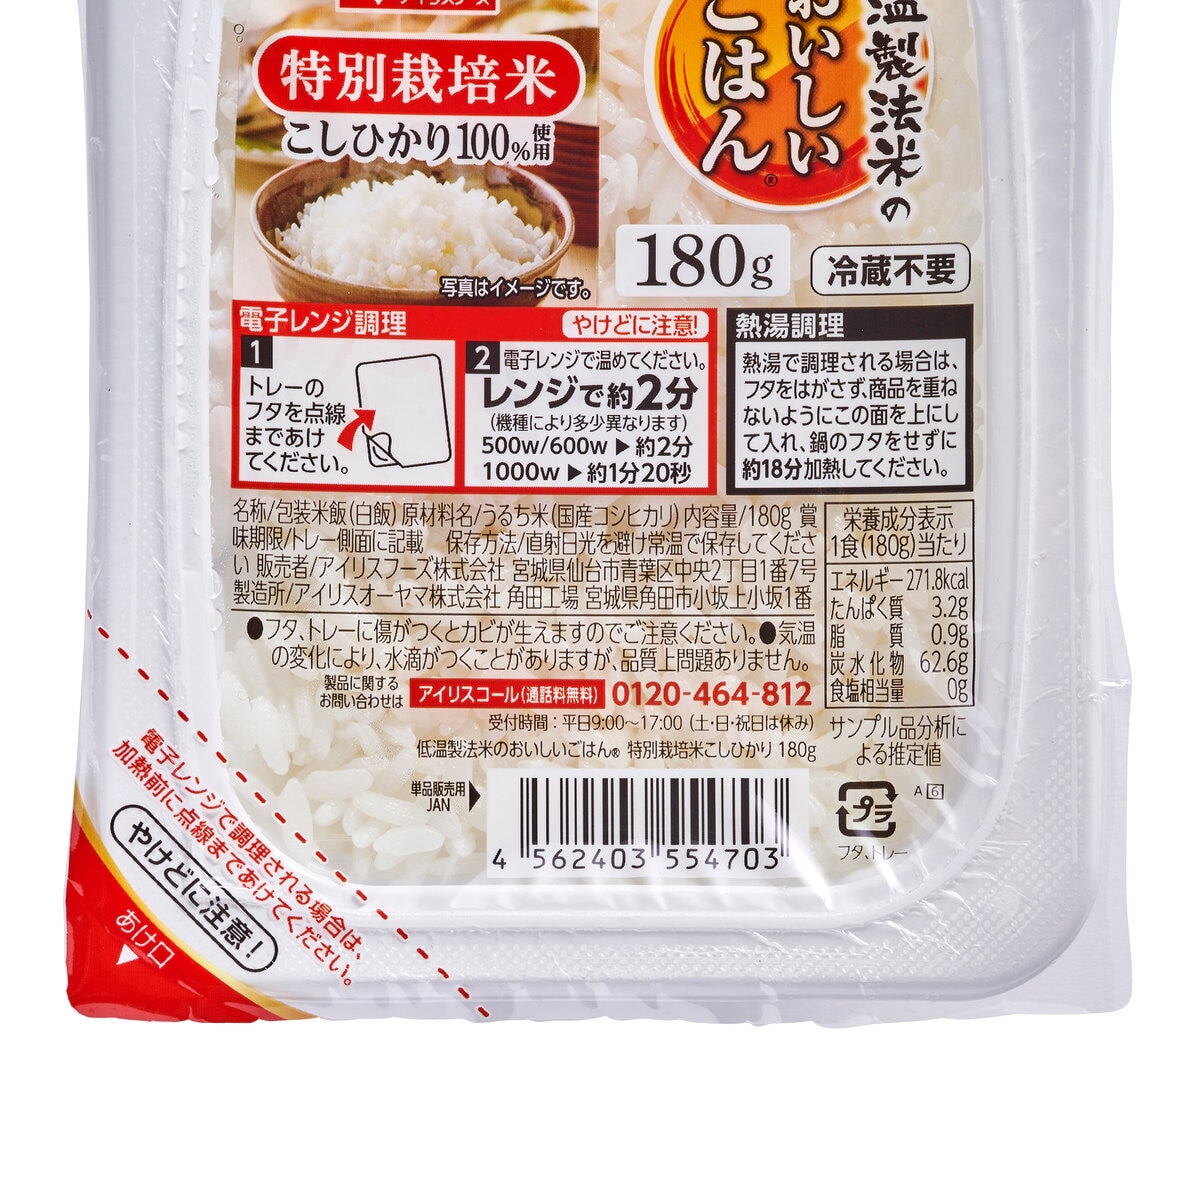 アイリスオーヤマ 低温製法米パックライス 180g x 10パック 特別栽培米こしひかり100%